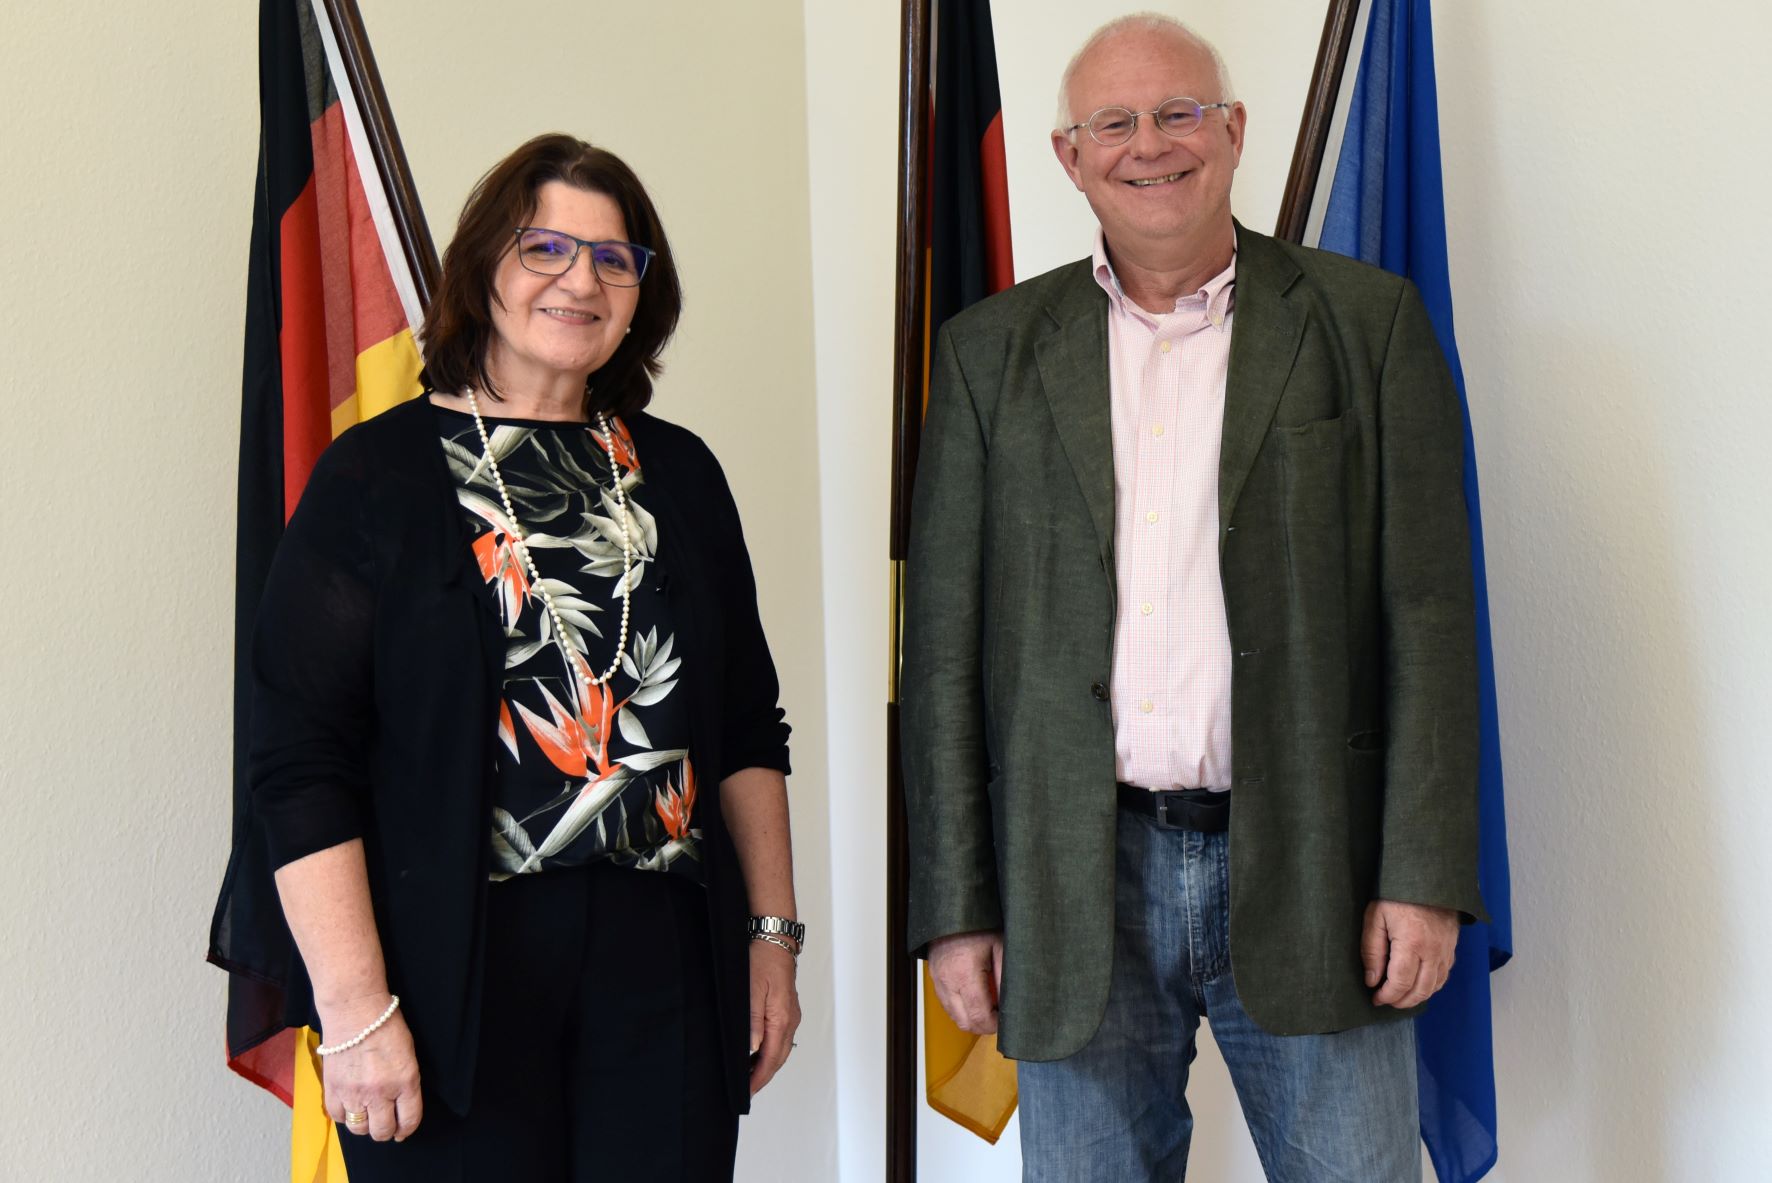 Staatssekretärin Altesleben und Michael Löher vor der Deutschland- und Europaflagge